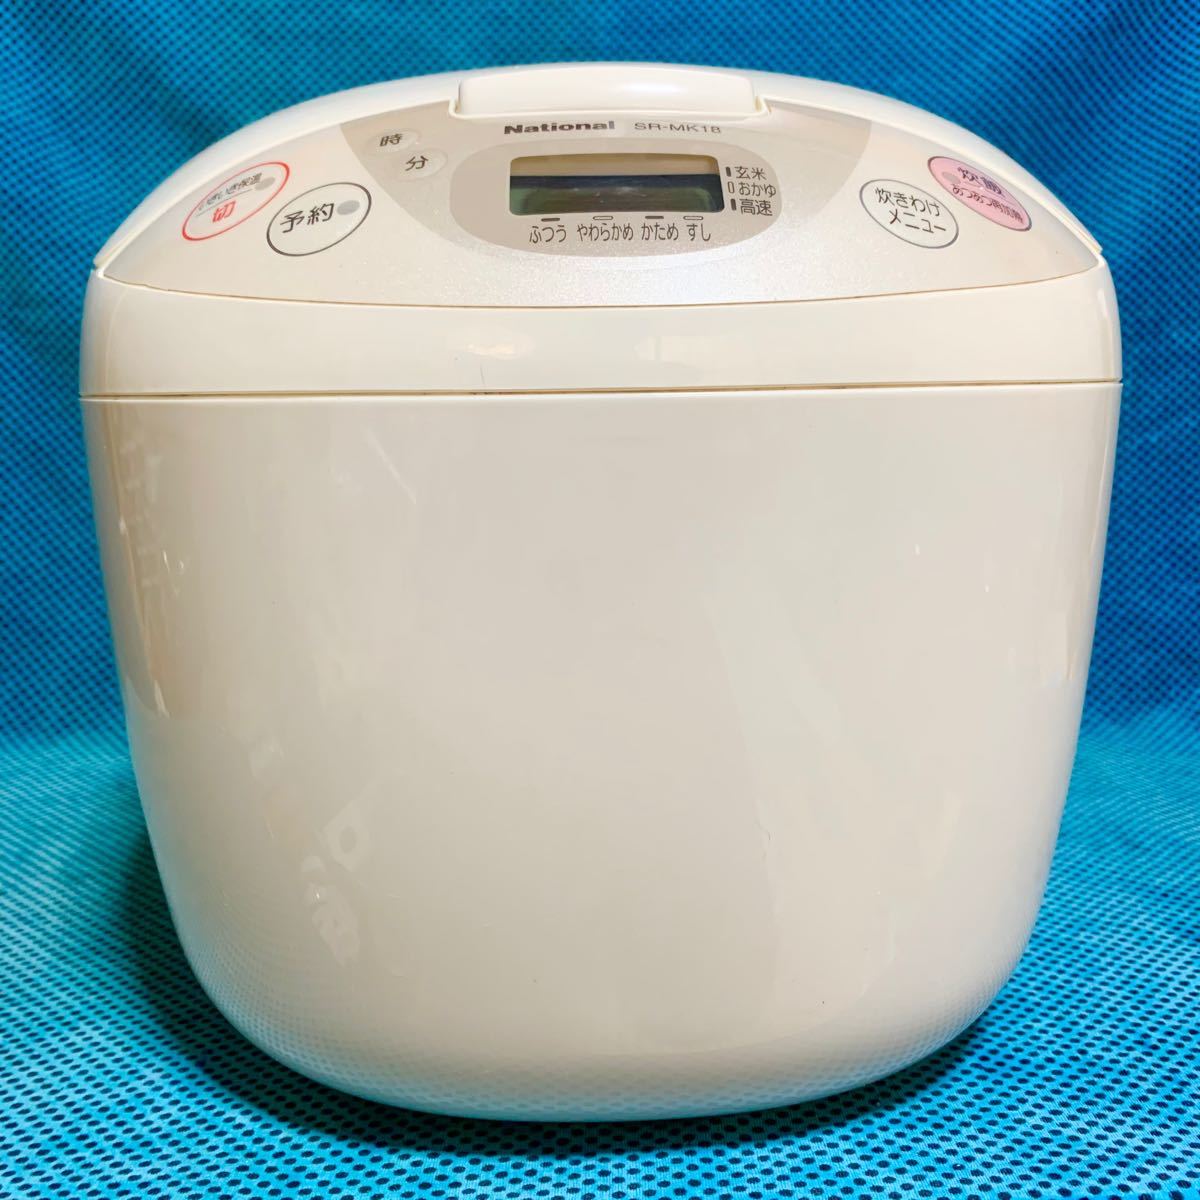 National 電子ジャー炊飯器 1升炊き 1.8L SR-MK18 白 電気ヒーター ナショナル マイコン炊飯器